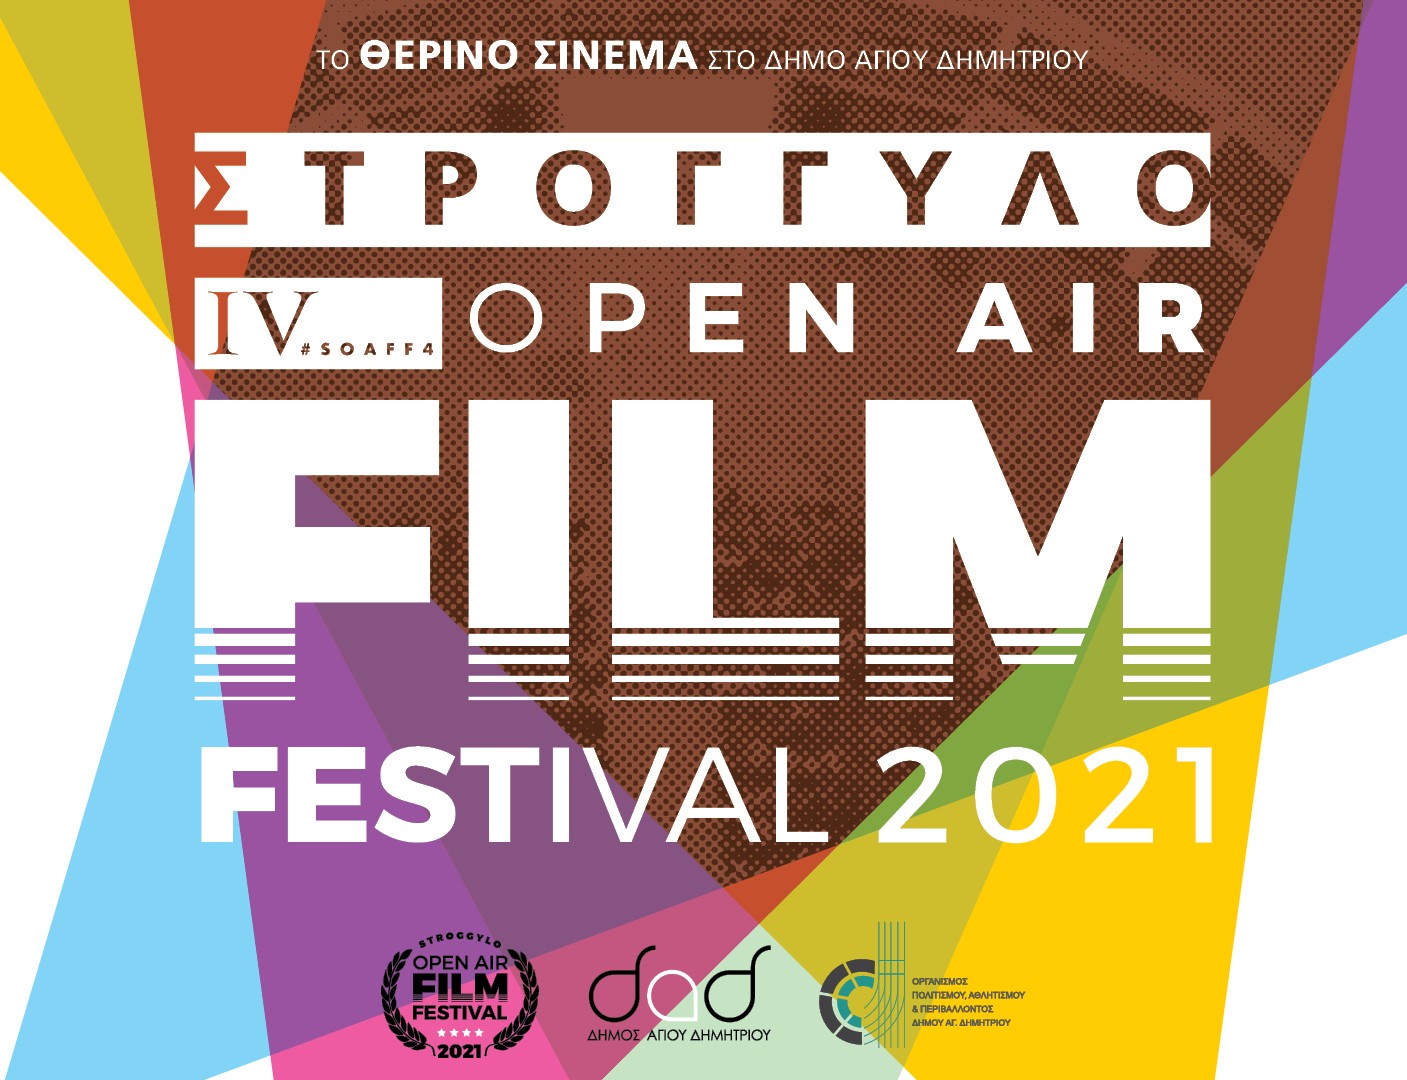 Δήμος Αγίου Δημητρίου: Ξεκινάει το Στρογγυλό Open Air Film Festival 2021